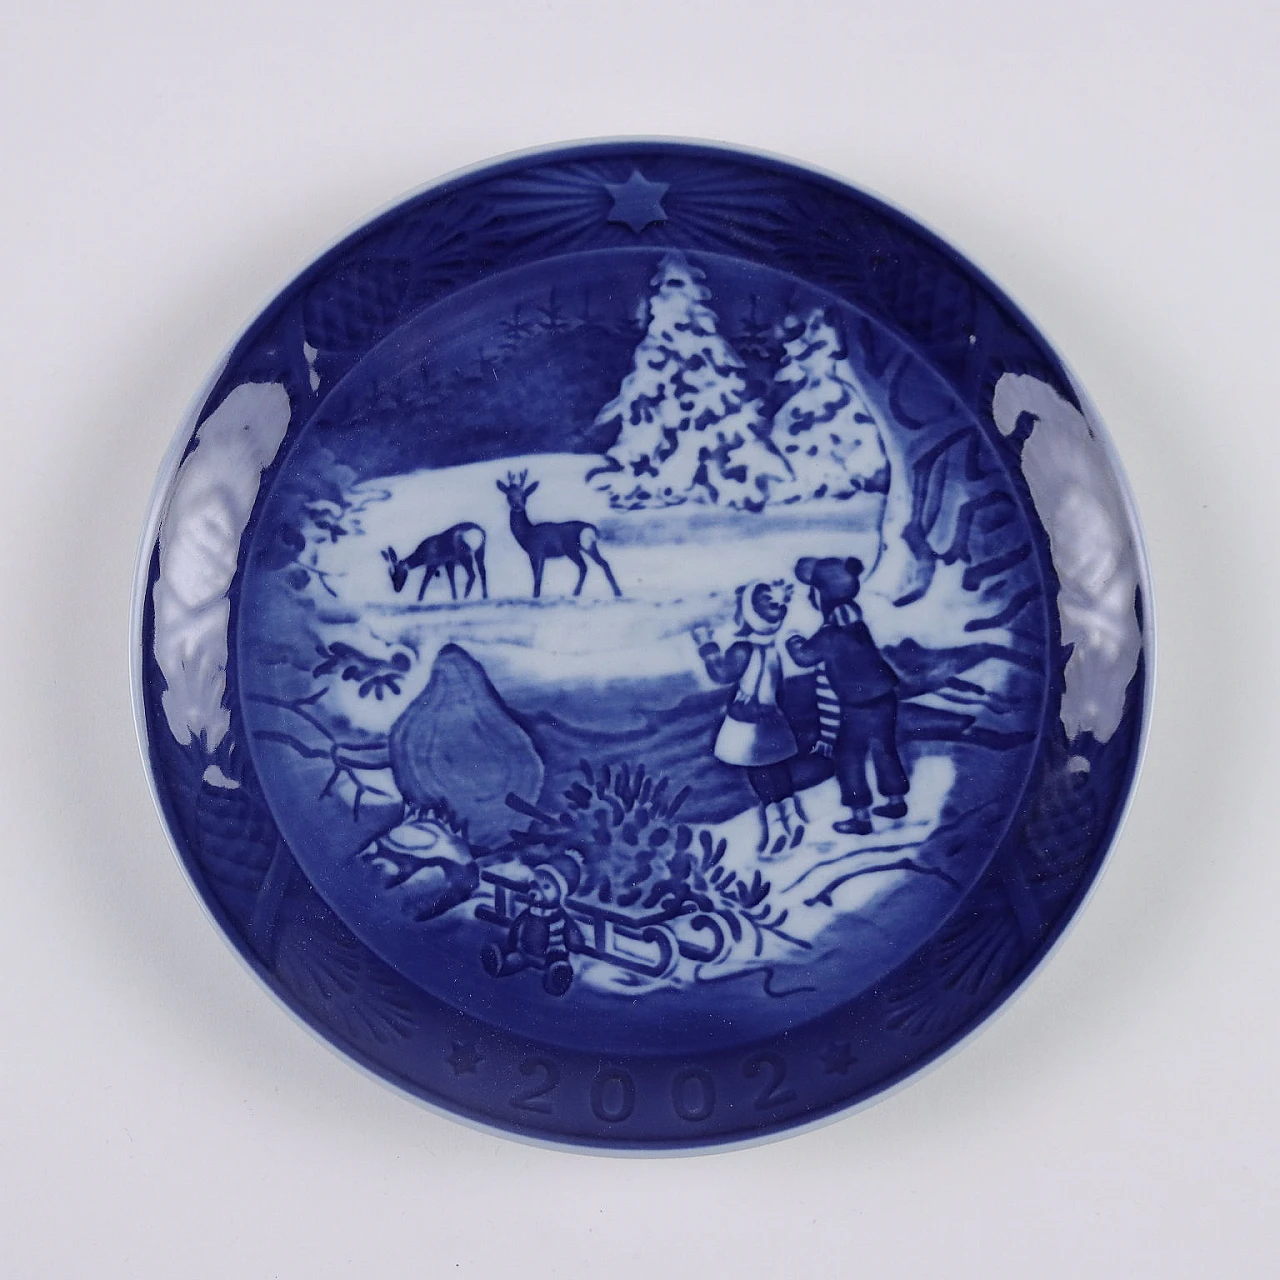 20 Blue porcelain plates by Royal Copenhagen 6